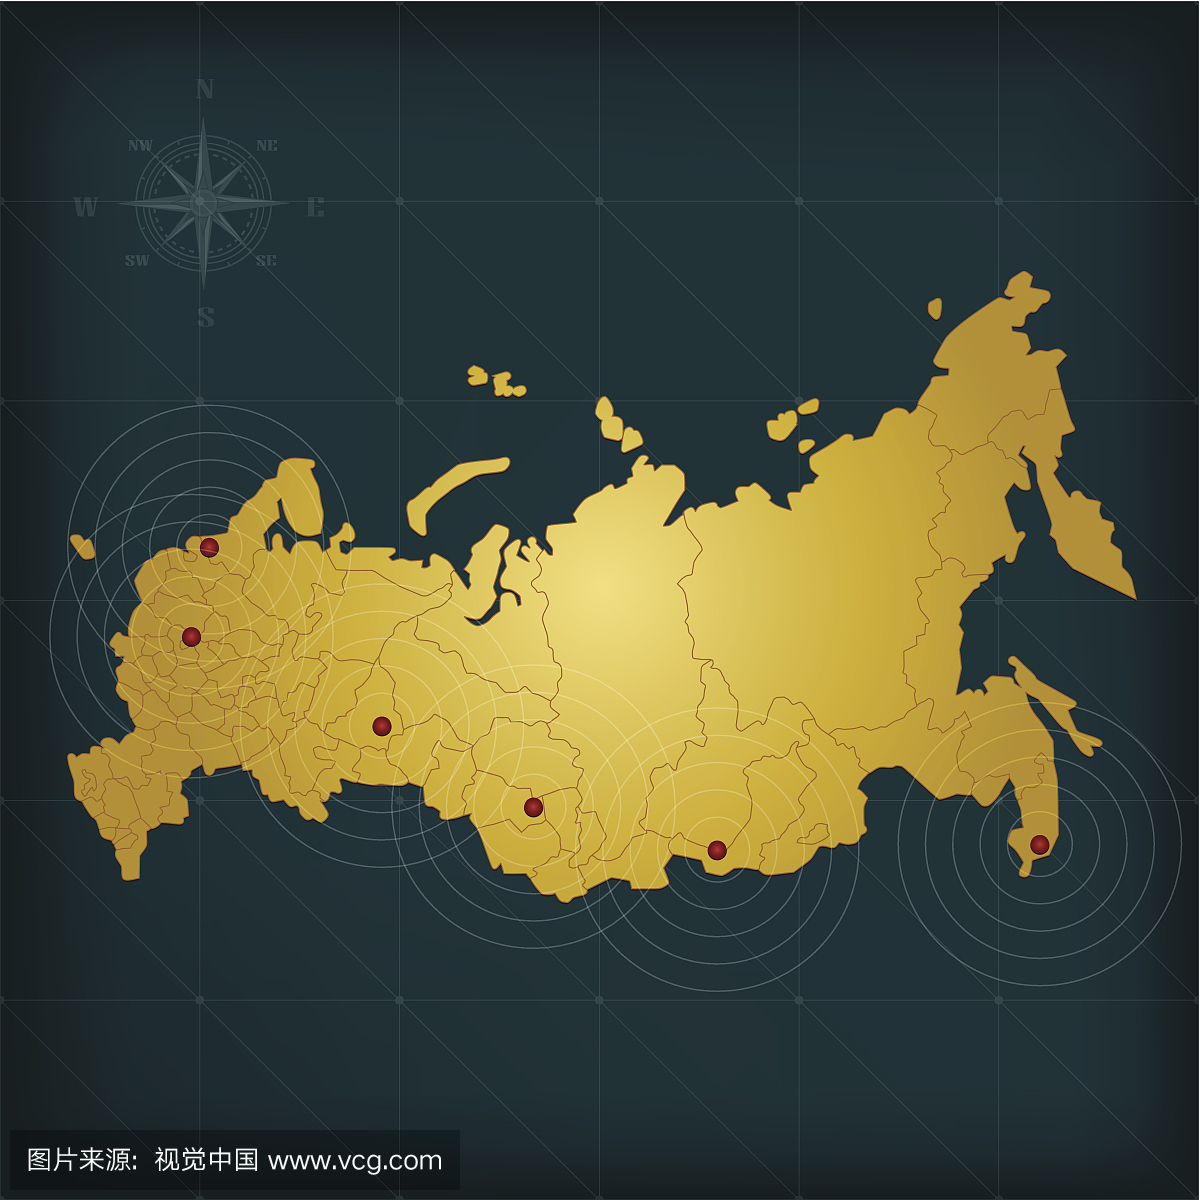 俄罗斯远东地区 - 快懂百科